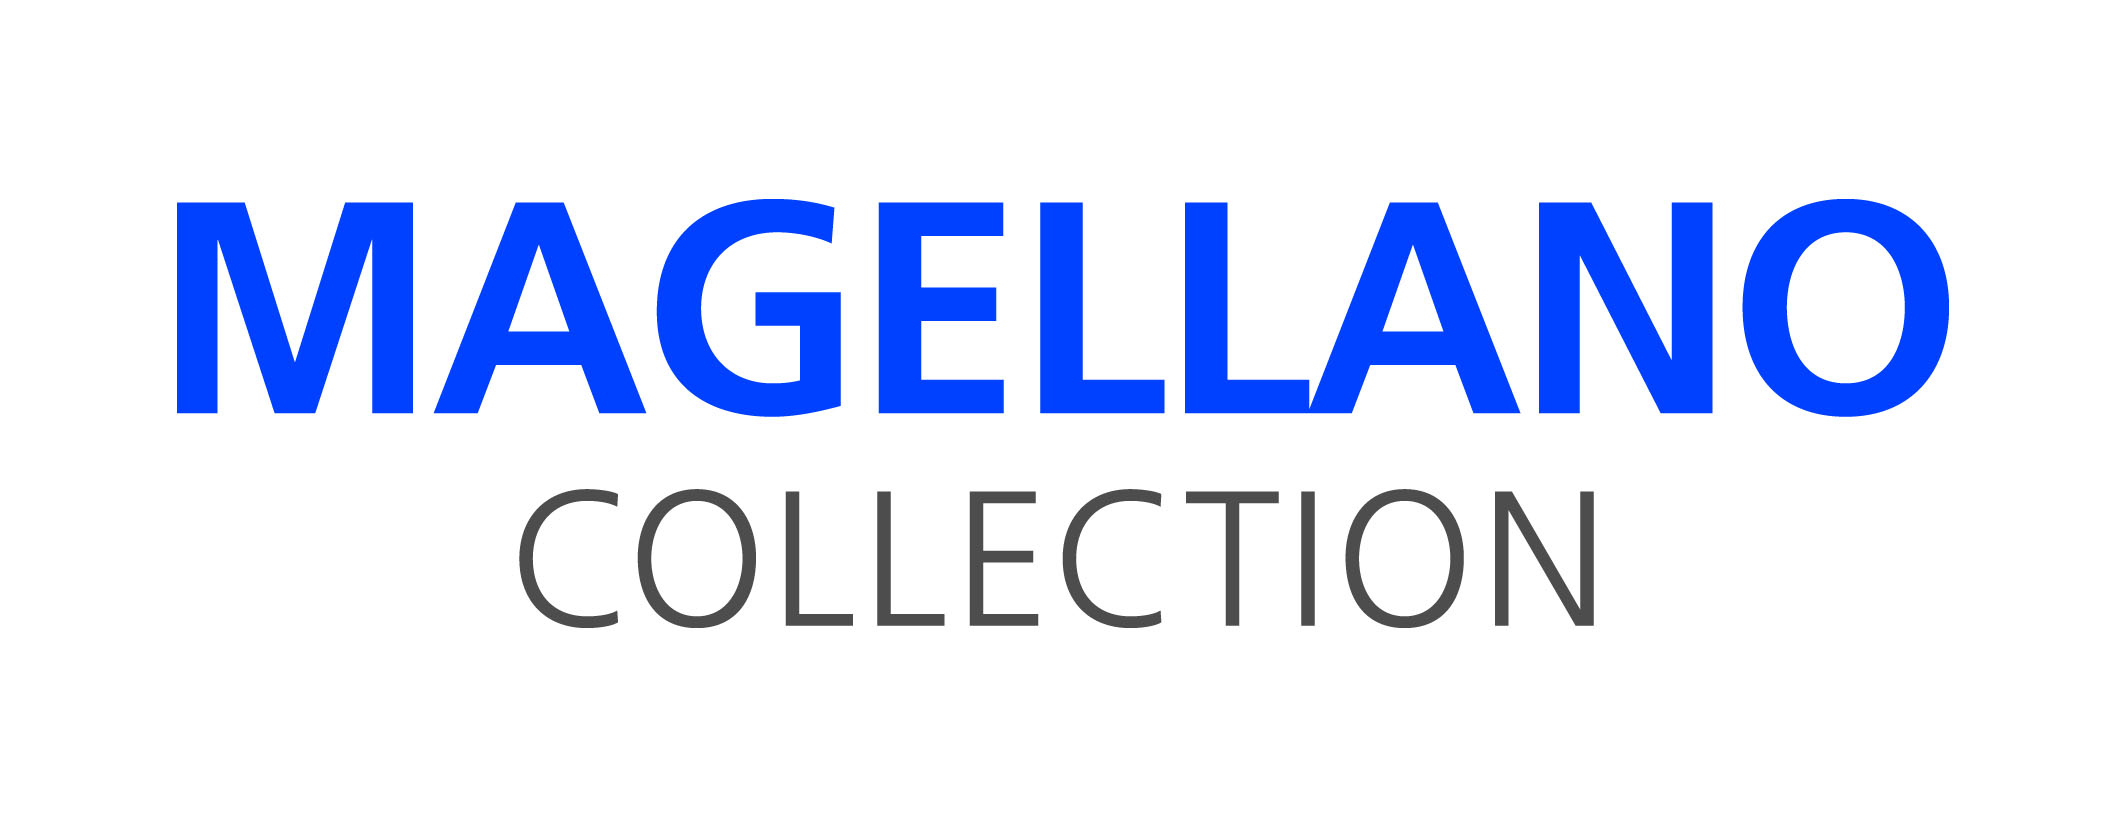 Magellano Collection